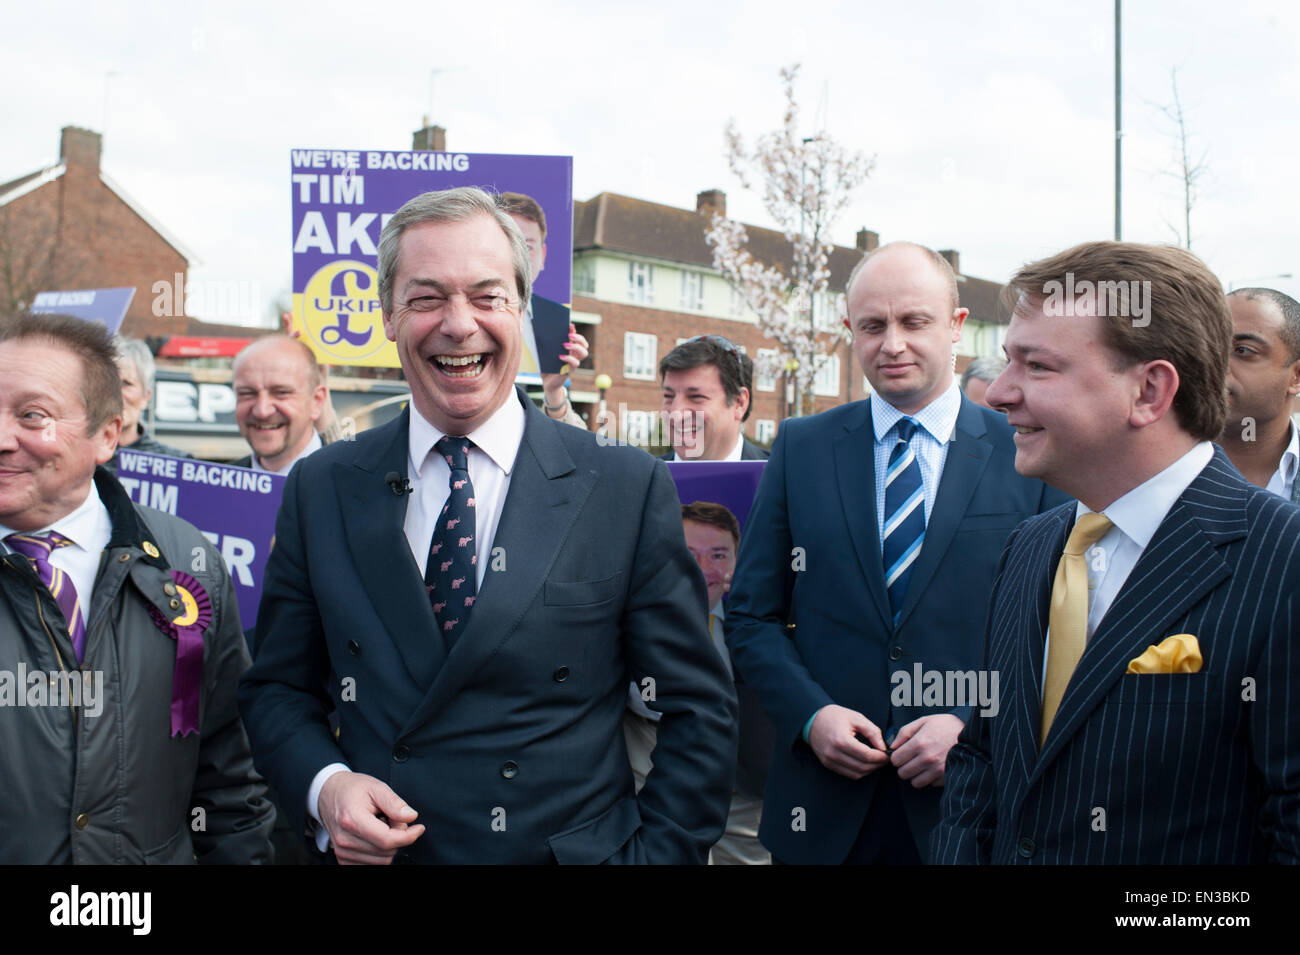 Elecciones Generales 2015 UKIP líder Nigel Farage campaña en UKIP baluarte de South Ockendon, Essex. Foto de stock